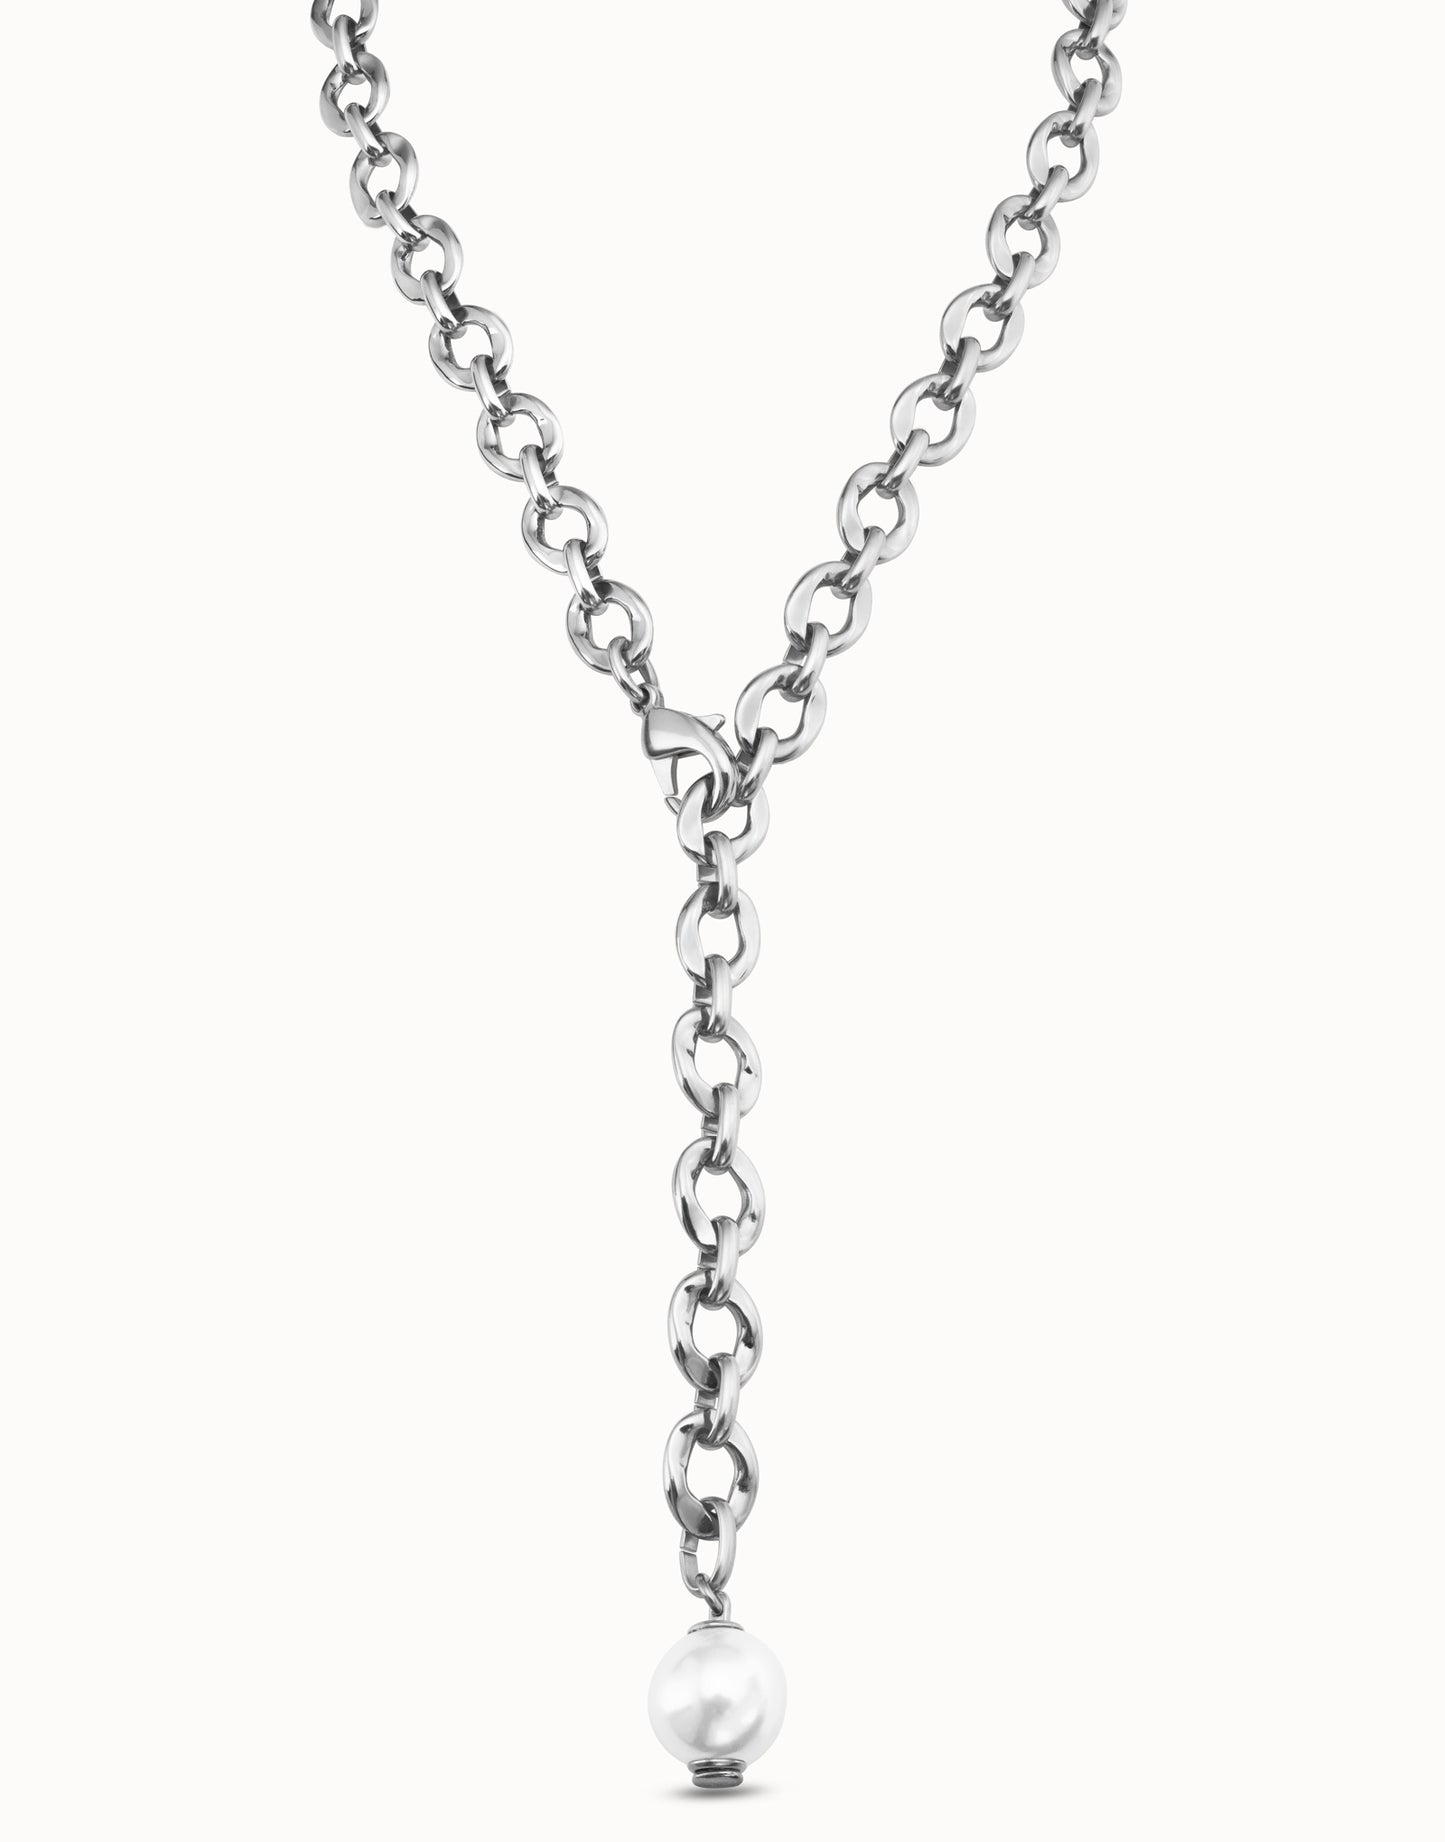 UNO de 50 Joy of Living Silver Necklace